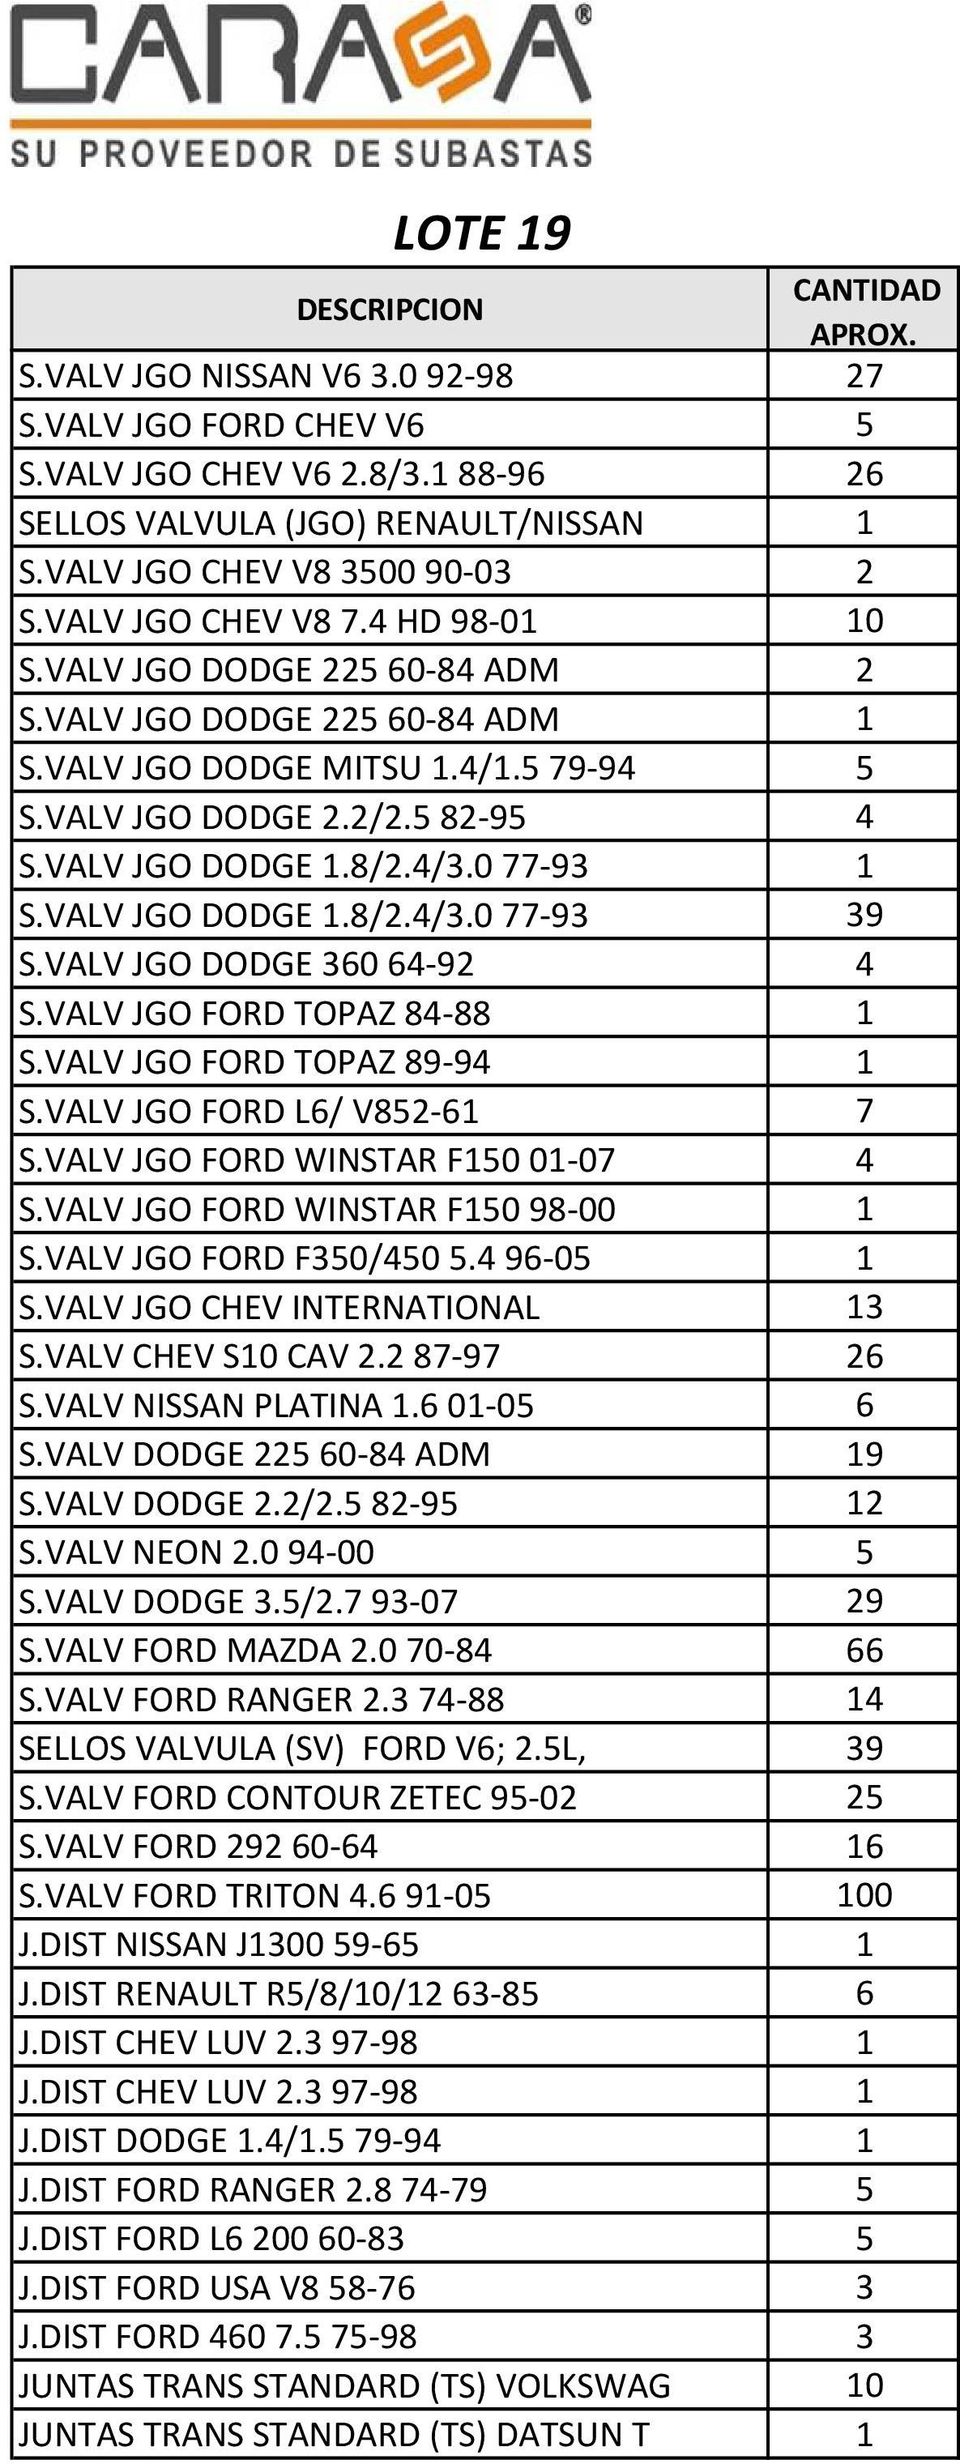 VALV JGO DODGE 36064-92 4 S.VALV JGO FORD TOPAZ 84-88 1 S.VALV JGO FORD TOPAZ 89-94 1 S.VALV JGO FORD L6/ V852-61 7 S.VALV JGO FORD WINSTAR F150 01-07 4 S.VALV JGO FORD WINSTAR F150 98-00 1 S.